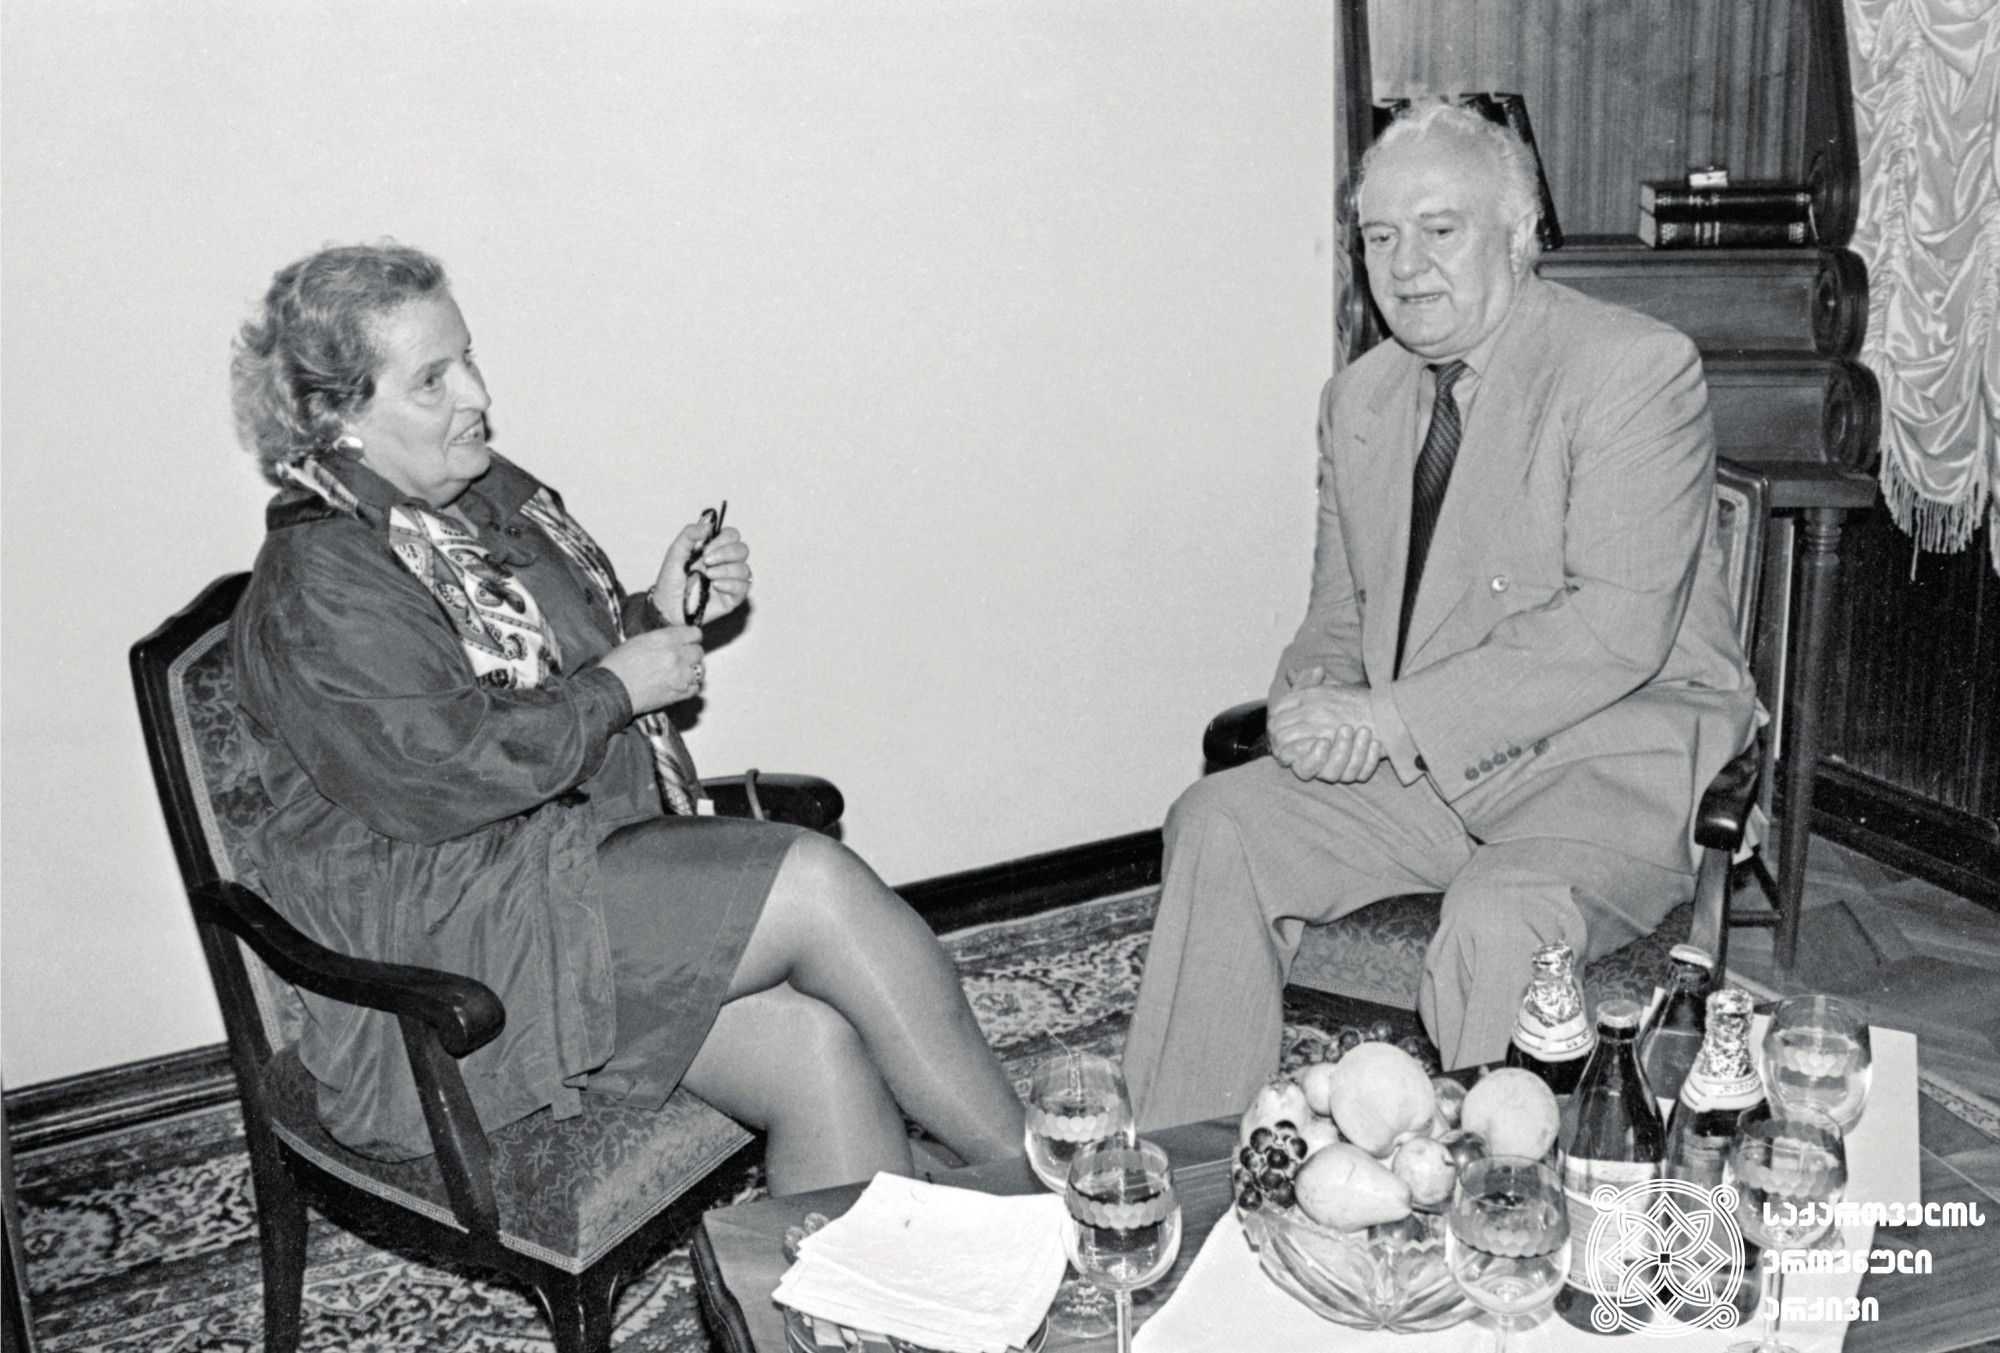 გაეროში აშშ-ის ელჩის, მადლენ ოლბრაიტის ვიზიტი თბილისში. <br>
1994 წელი. <br>
ვლადიმერ ვალიშვილის ფოტო.<br> 

U.S. Ambassador to the United Nations, Madeleine Albright, paid a visit to Tbilisi. <br>
1994.<br> Photo by Vladimer Valishvili.